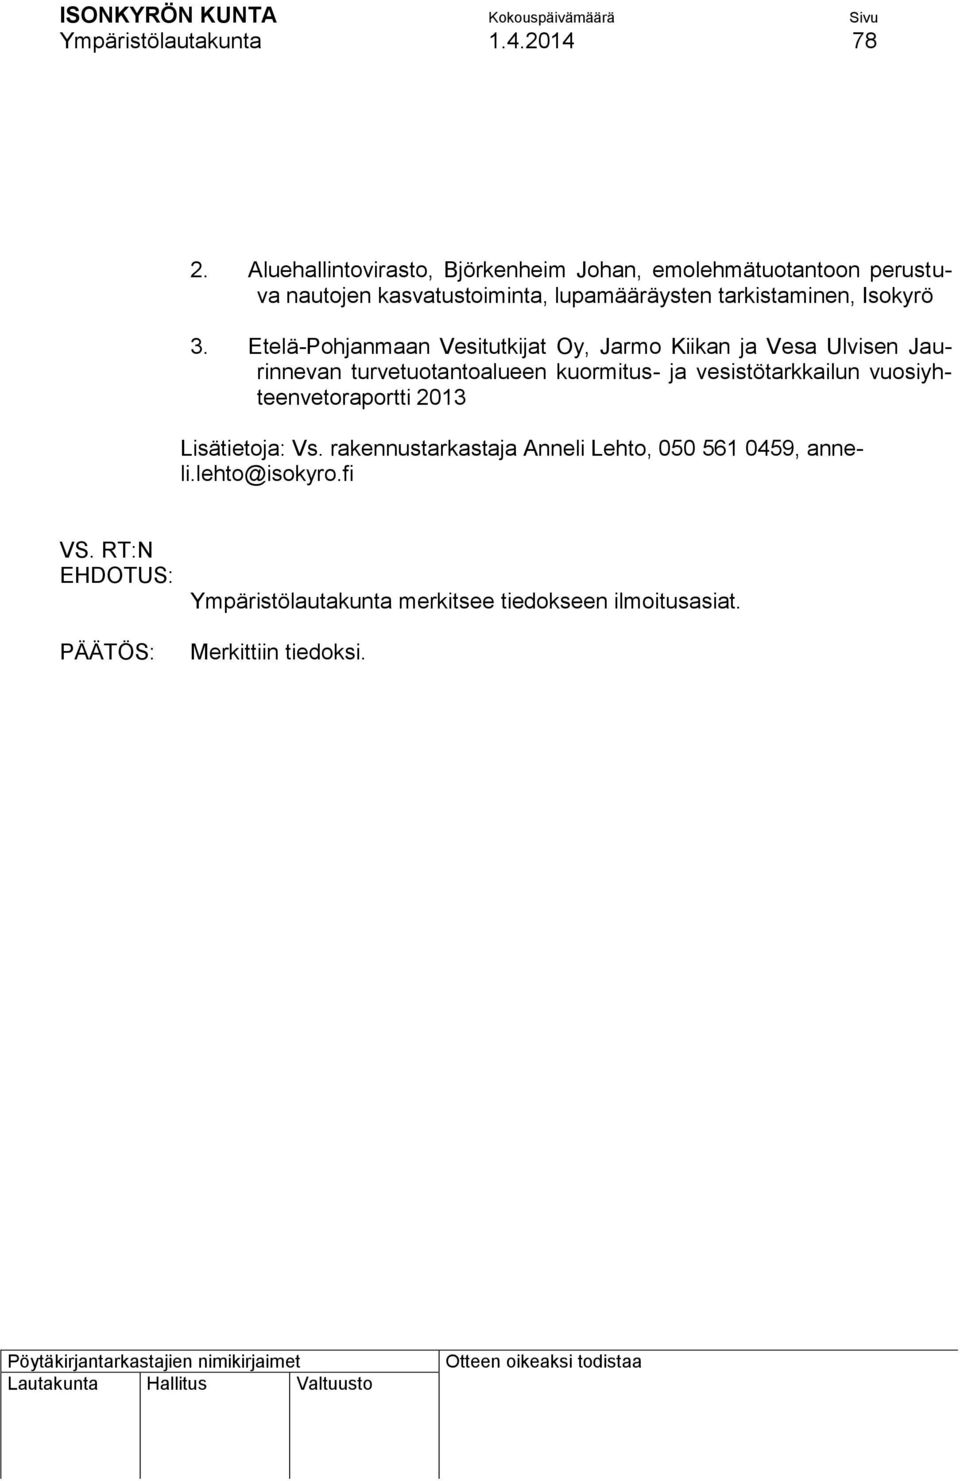 ISONKYRÖN KUNTA PÖYTÄKIRJA No 3/2014 Ympäristölautakunta Sivu 75 - PDF Free  Download